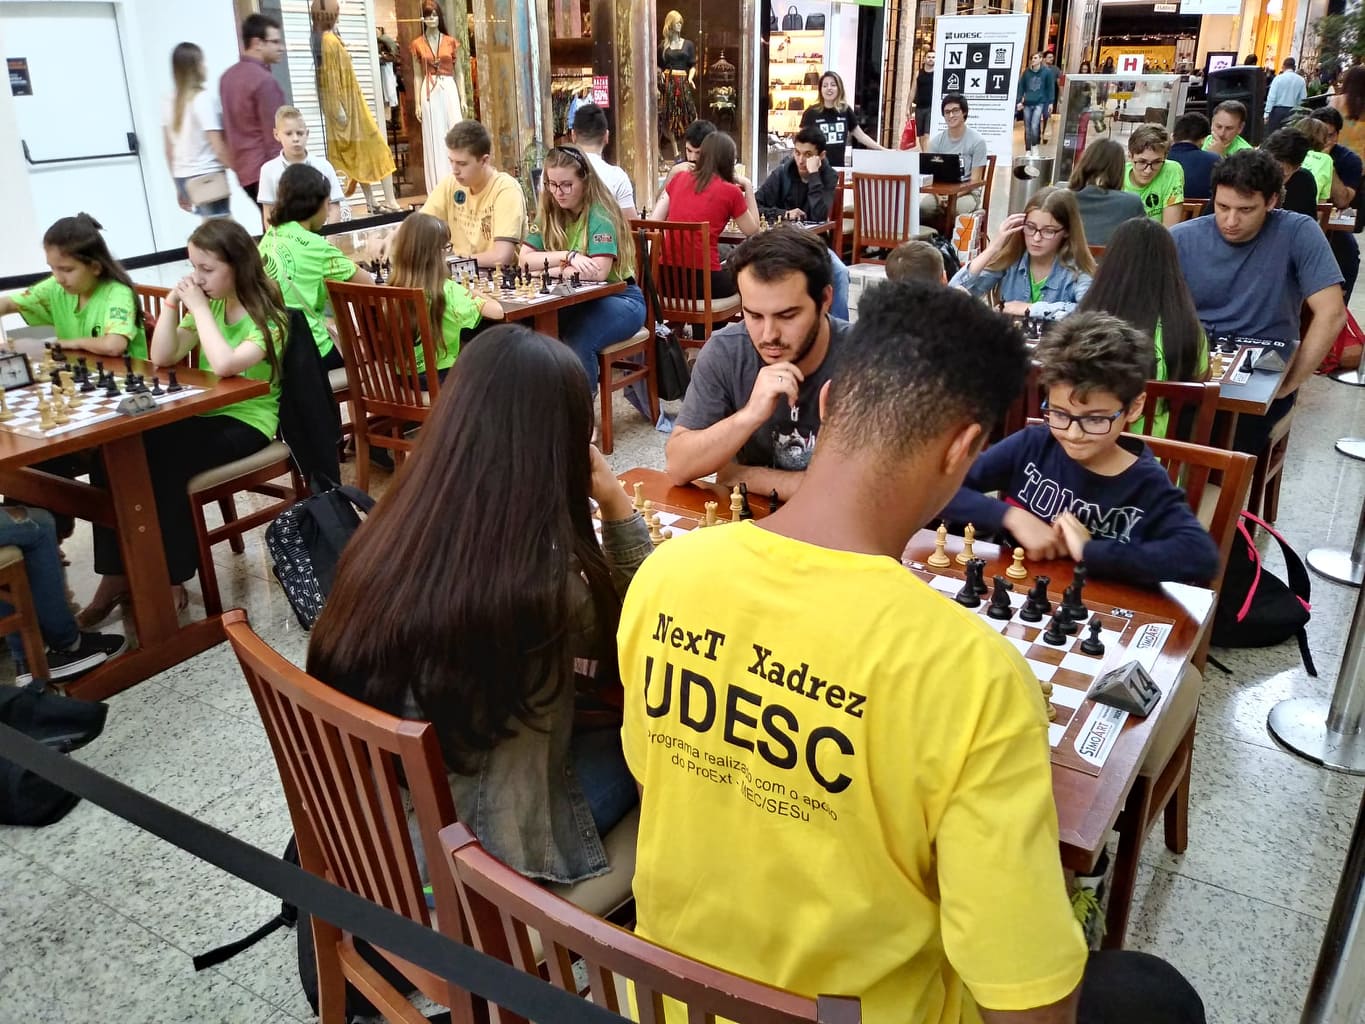 Notícia - Núcleo de xadrez da Udesc Joinville desenvolve materiais